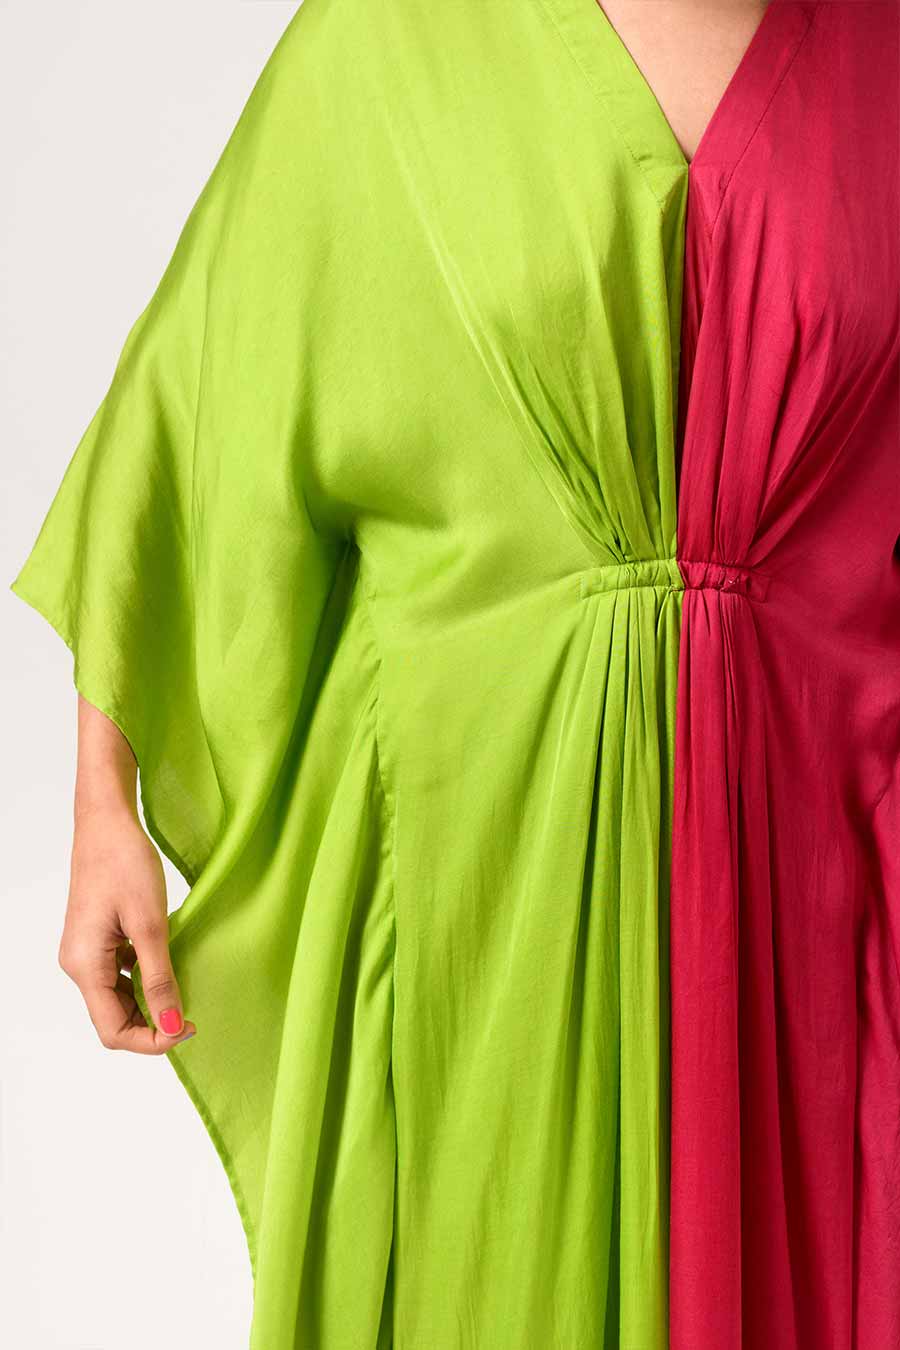 Green-Wine Half-n-Half Kaftan Dress